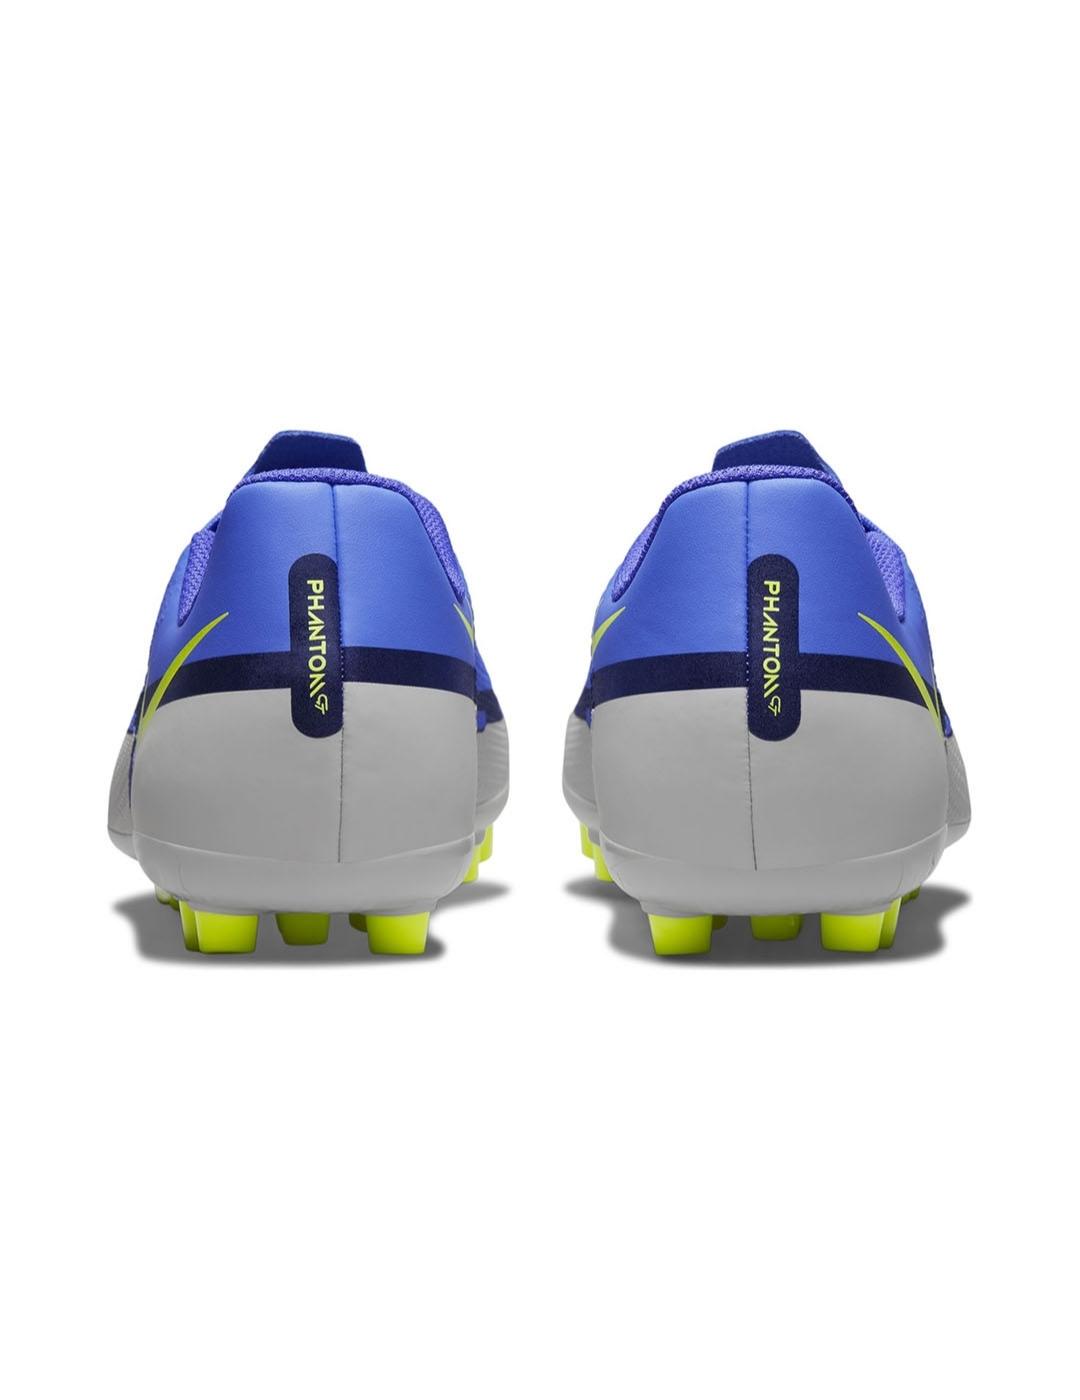 Nike Phantom - Gris - Botas Fútbol Niño